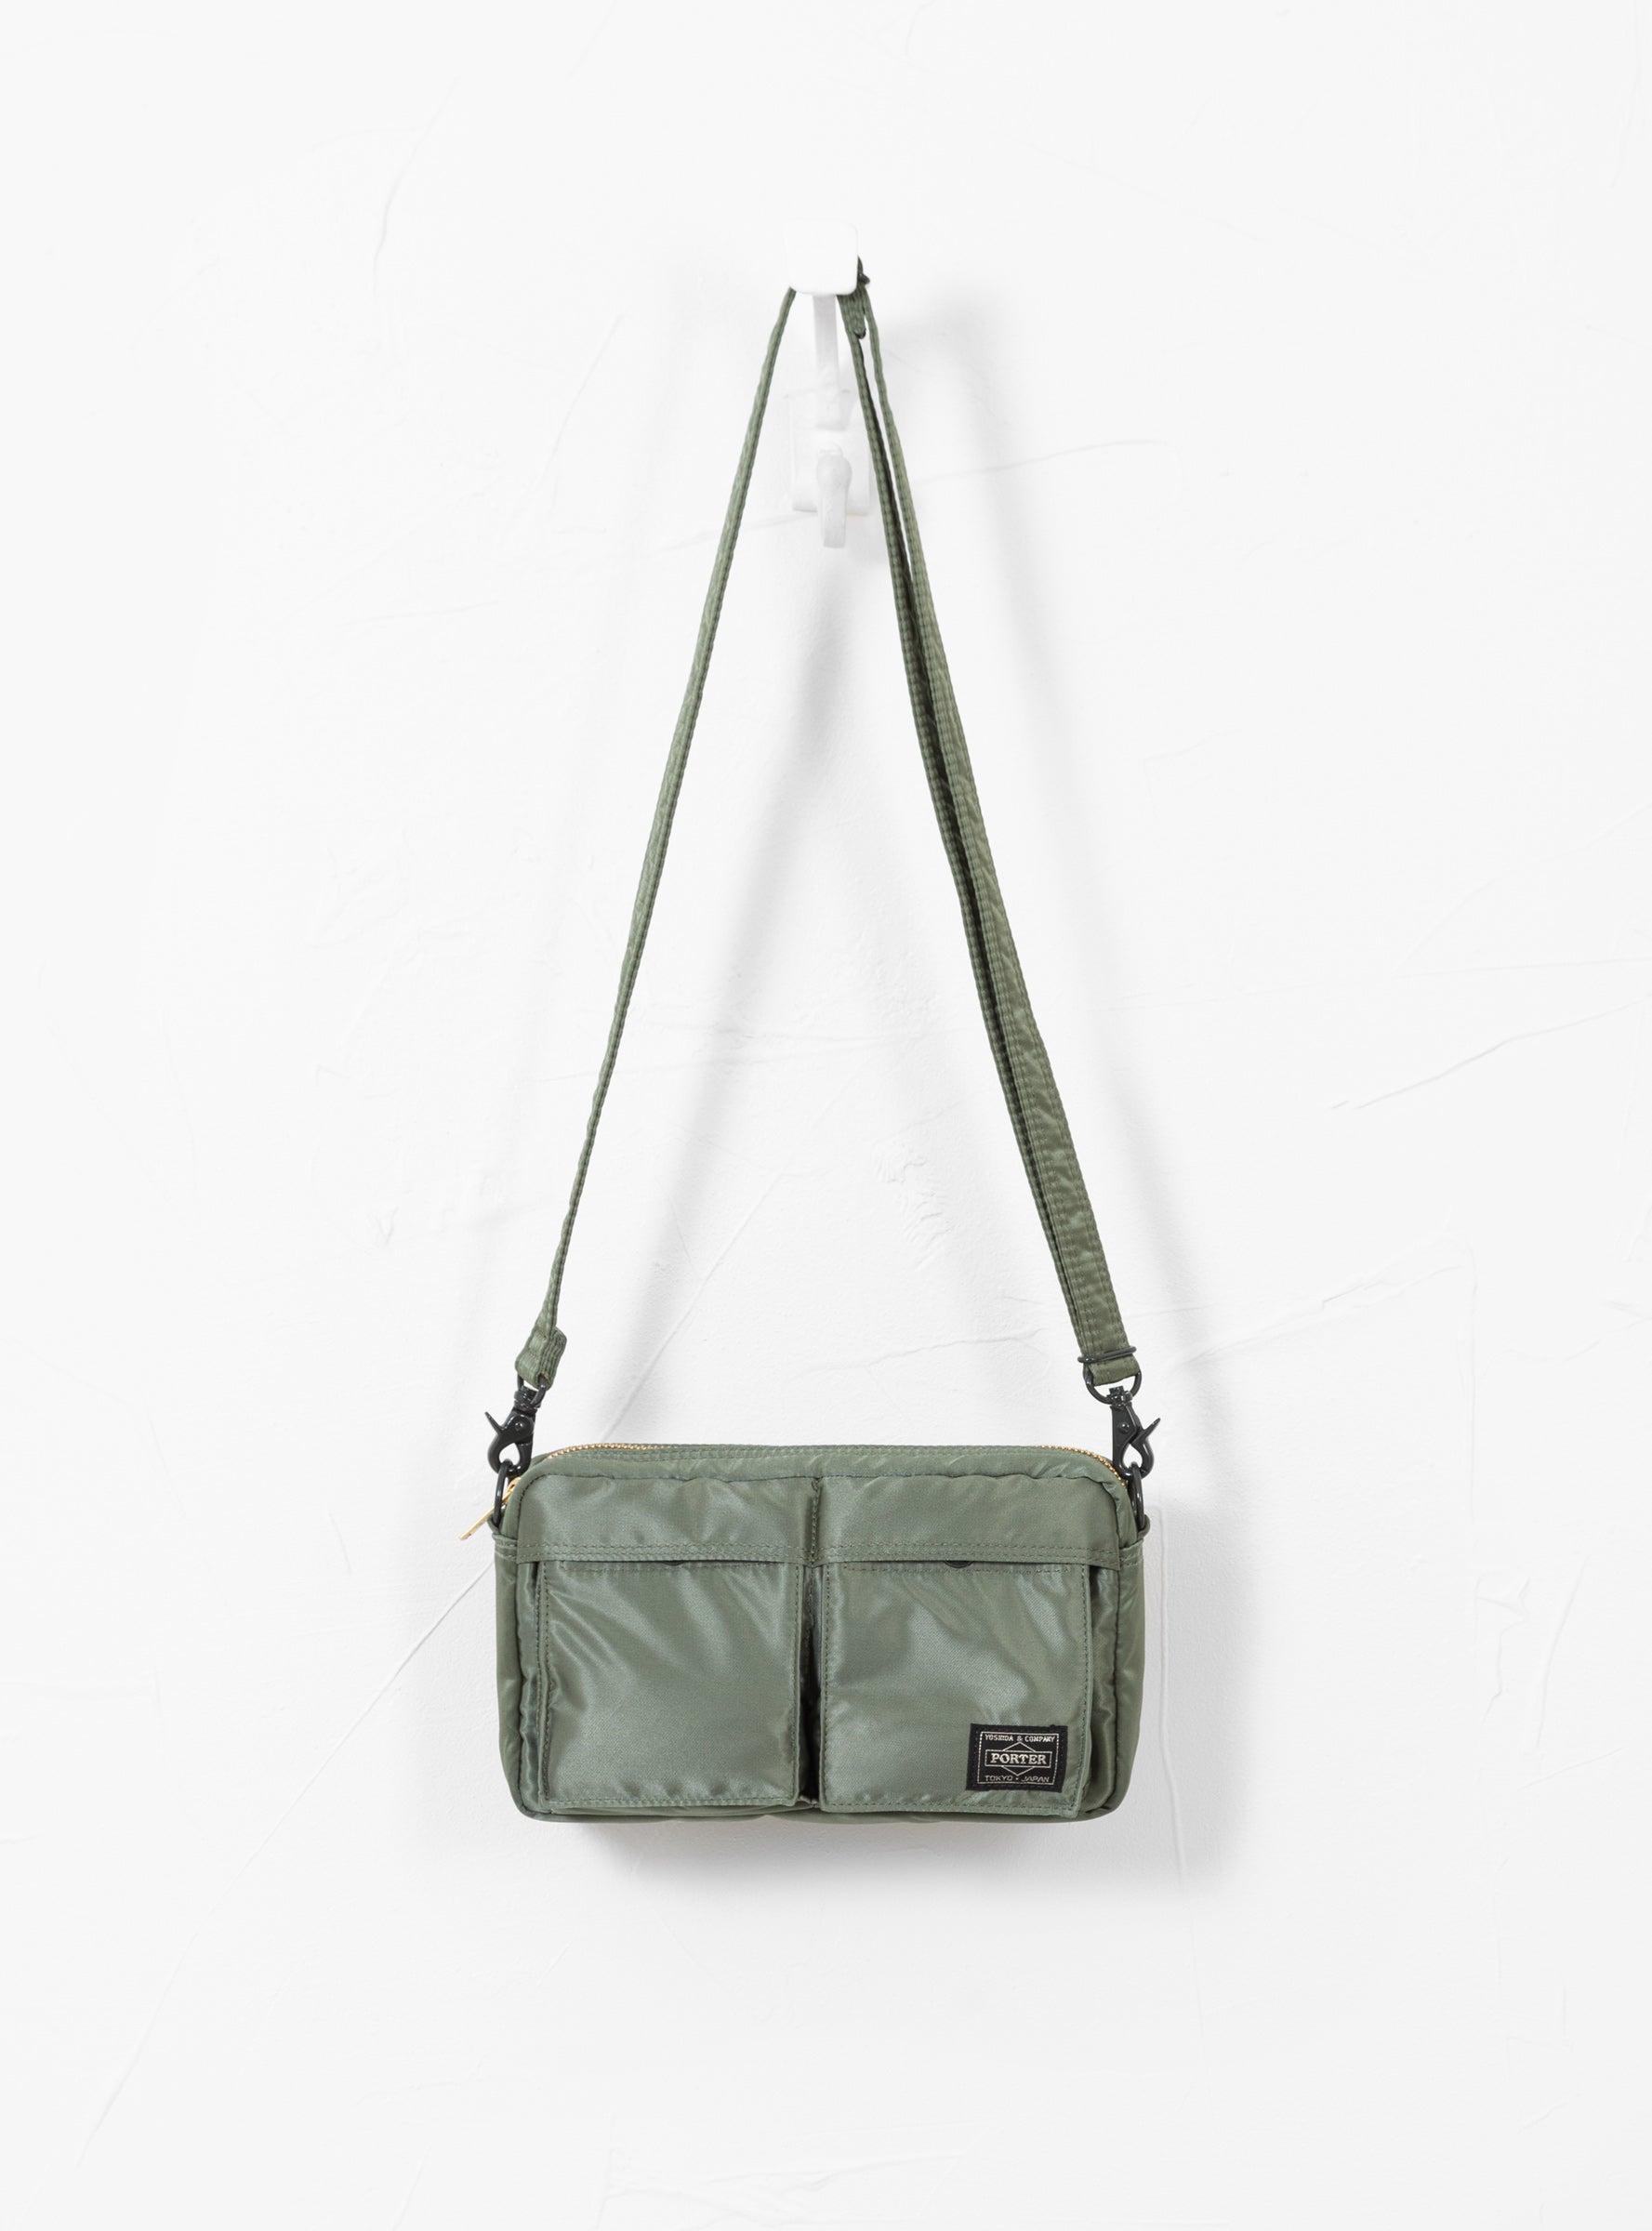 Porter - Yoshida & Co. - Tanker Shoulder Bag - Sage Green